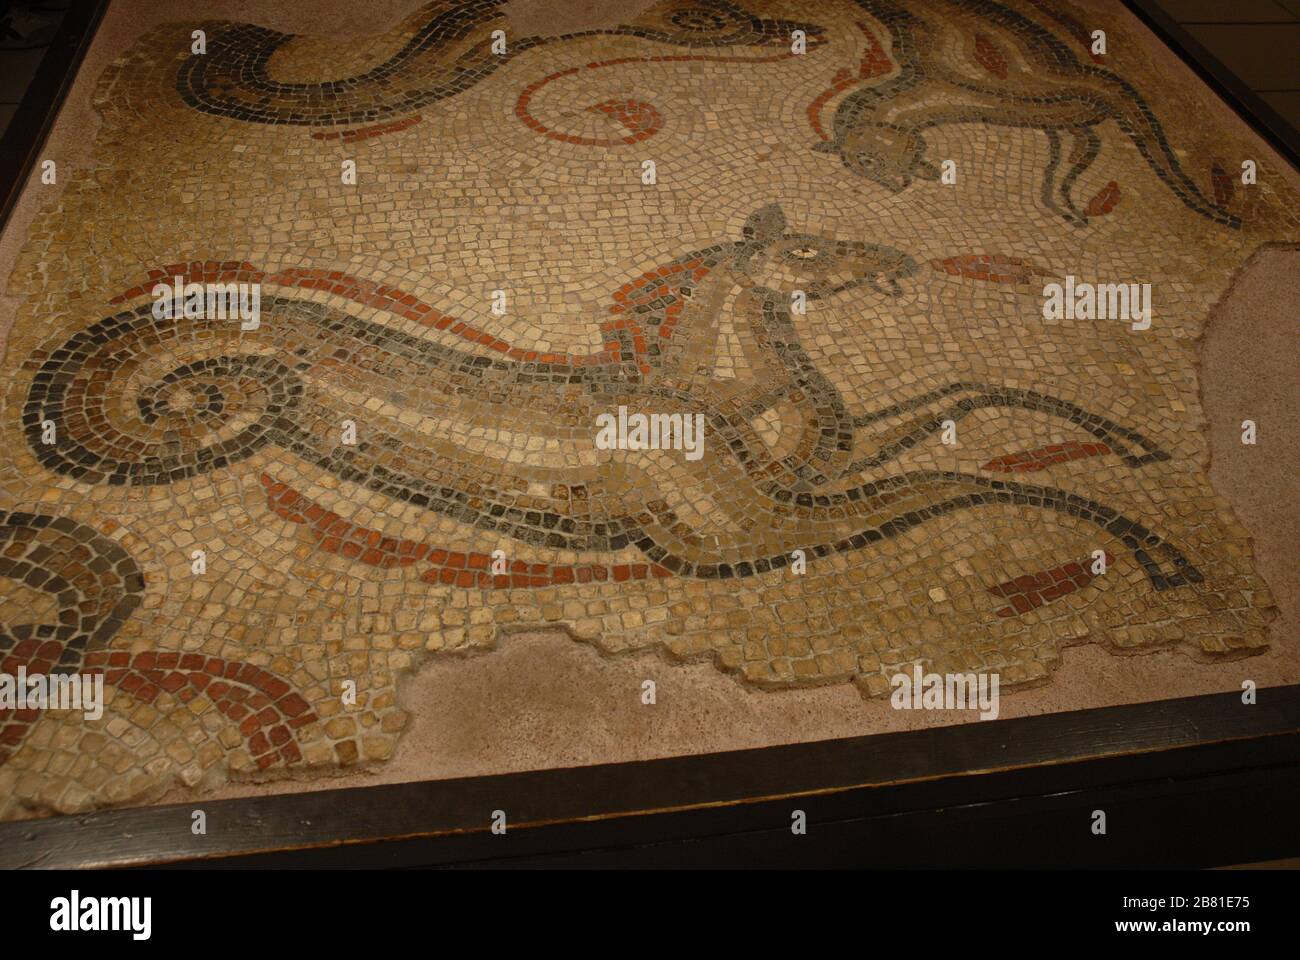 Mosaici di Aquae Sulis; bagni Romani, Abbazia di Yard, Bath, North East Somerset Consiglio. Regno Unito (Regno Unito). Foto: © Rosmi Duaso/fototextbcn Foto Stock